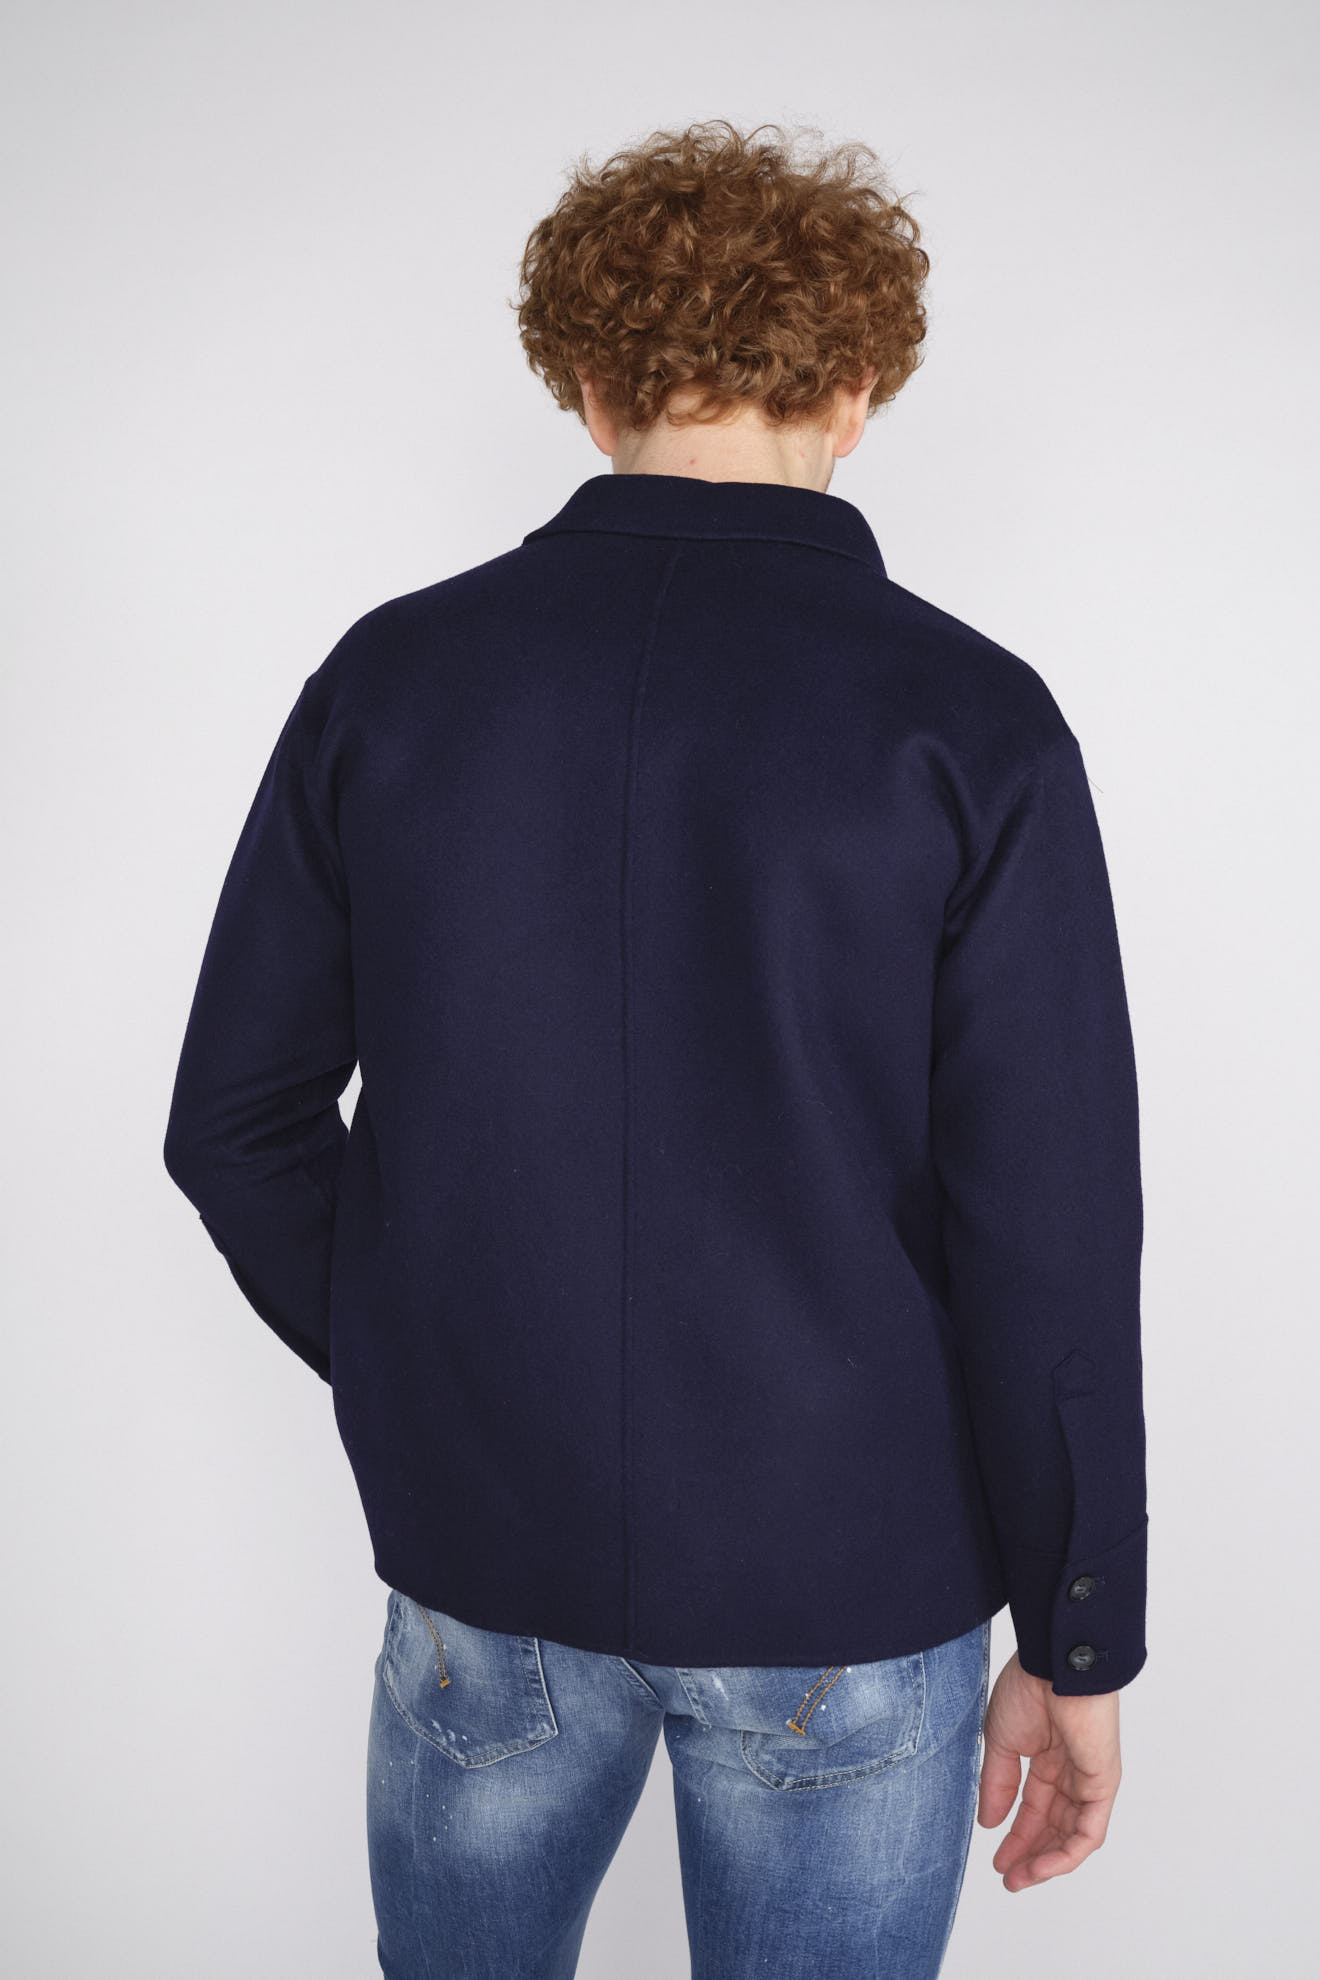 Arma Zane - Oversized Jacke im Hemdstil aus Wolle blue 50